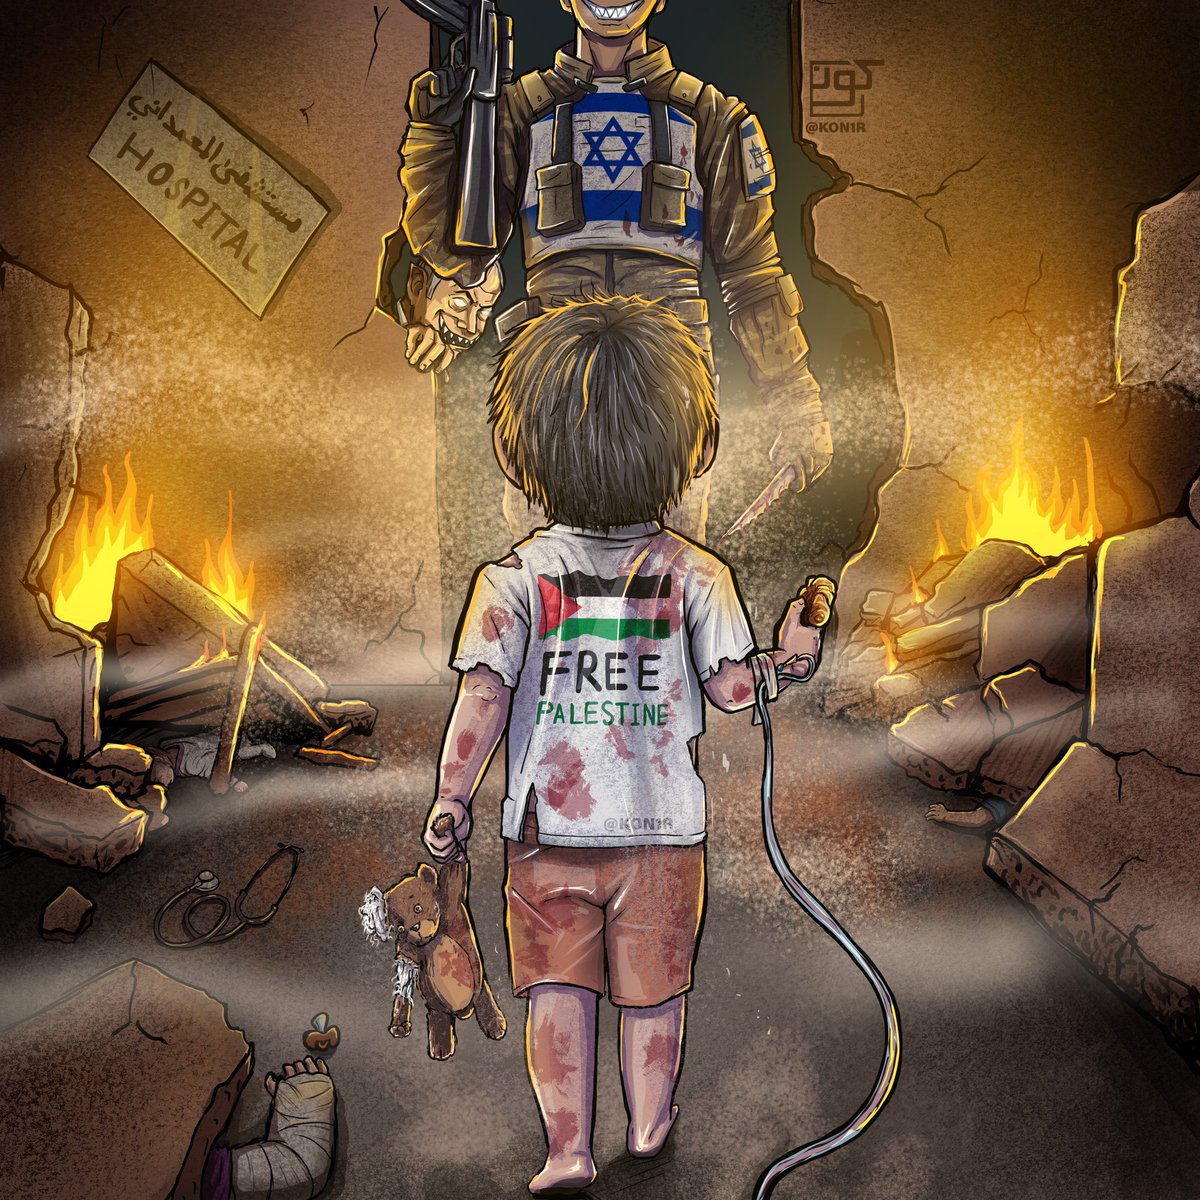 Uma imagem que descreve magistralmente a situação dos palestinos. Por uma Palestina livre e soberana!